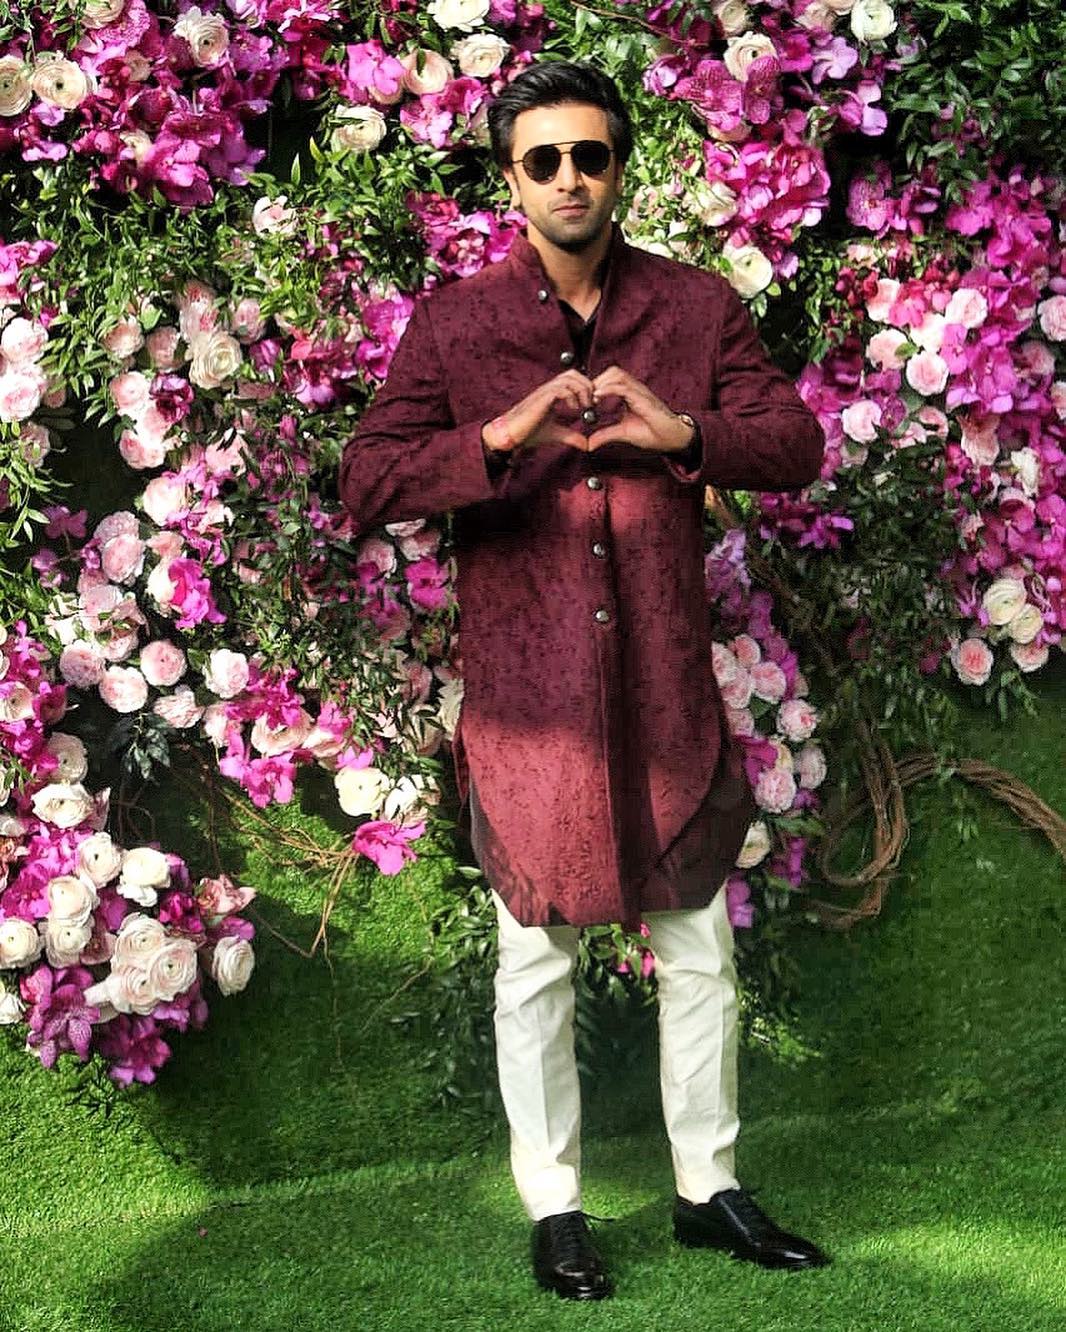 PinkVilla - Ranbir Kapoor looks dapper in casuals as he